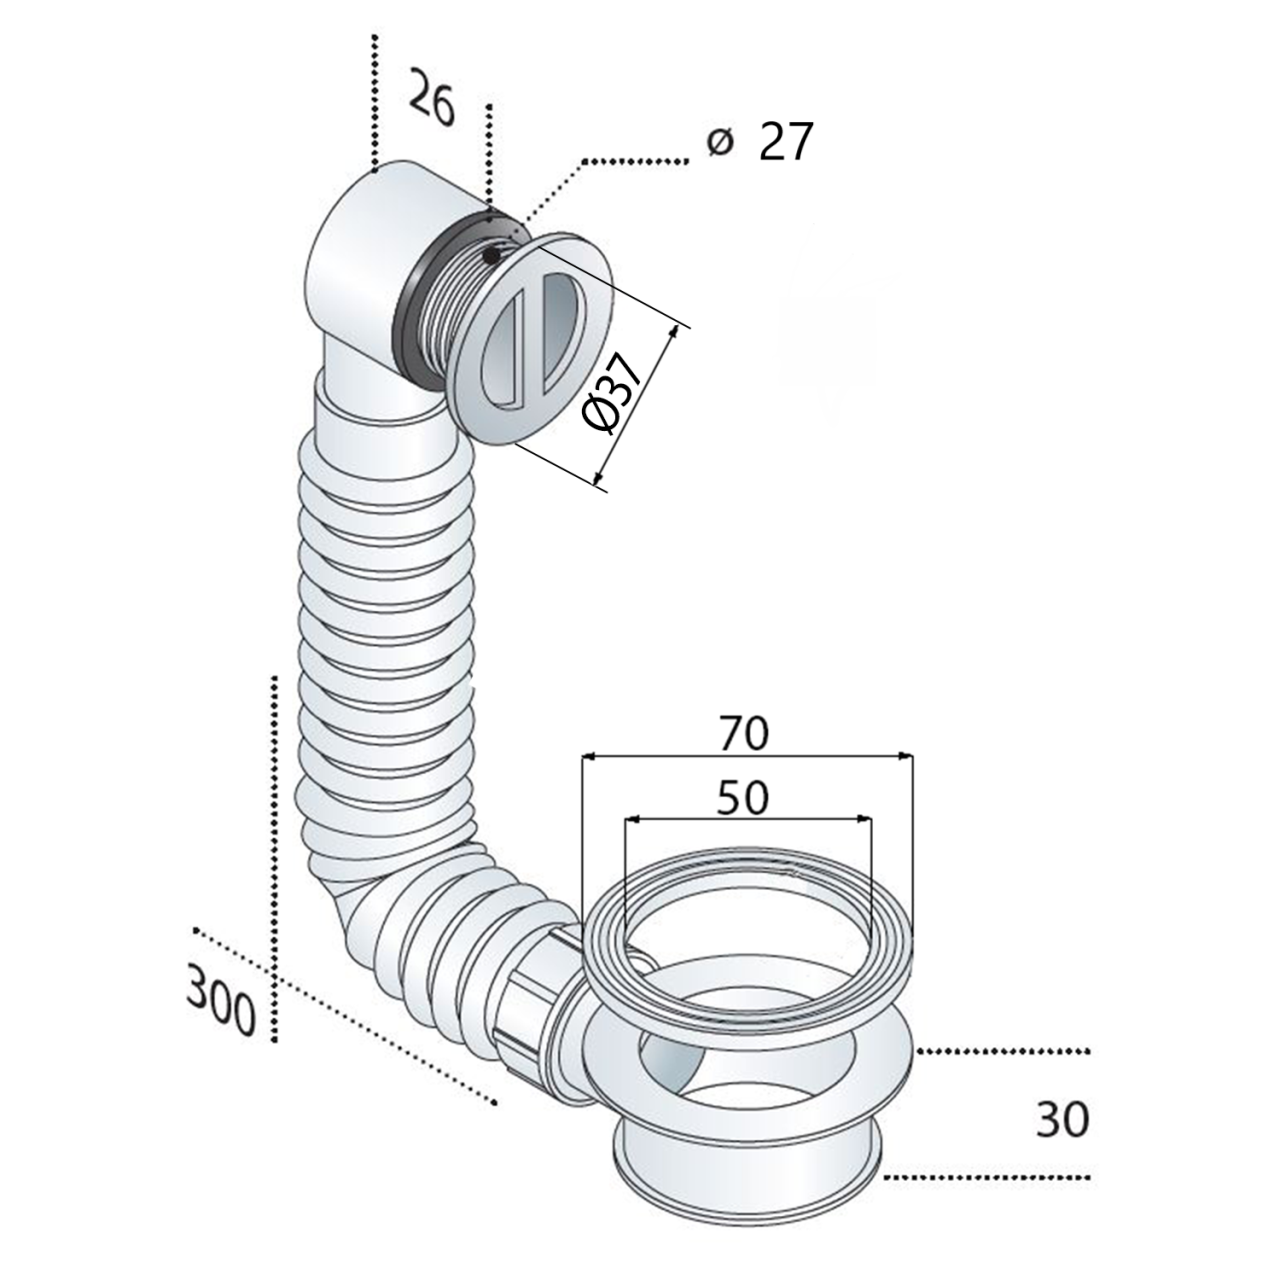 Überlaufgarnitur für Waschbecken mit Abstandhalter, Gitter ABS/Chrom